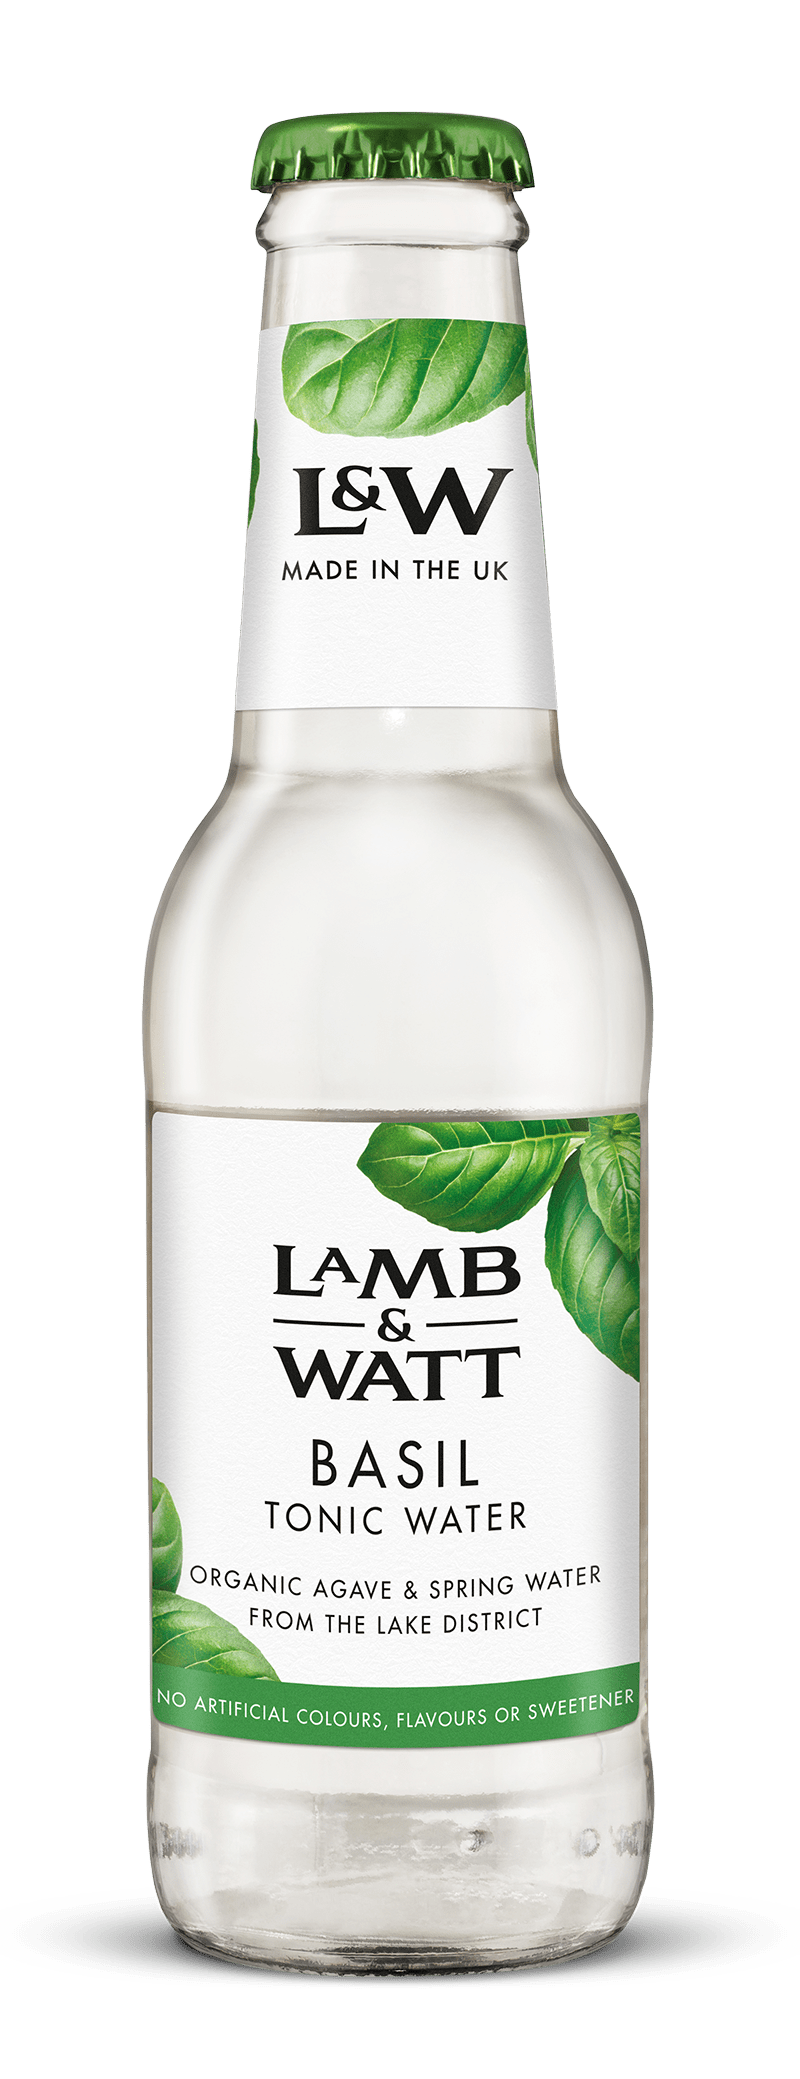 Lamb & Watt Basil Tonic Water